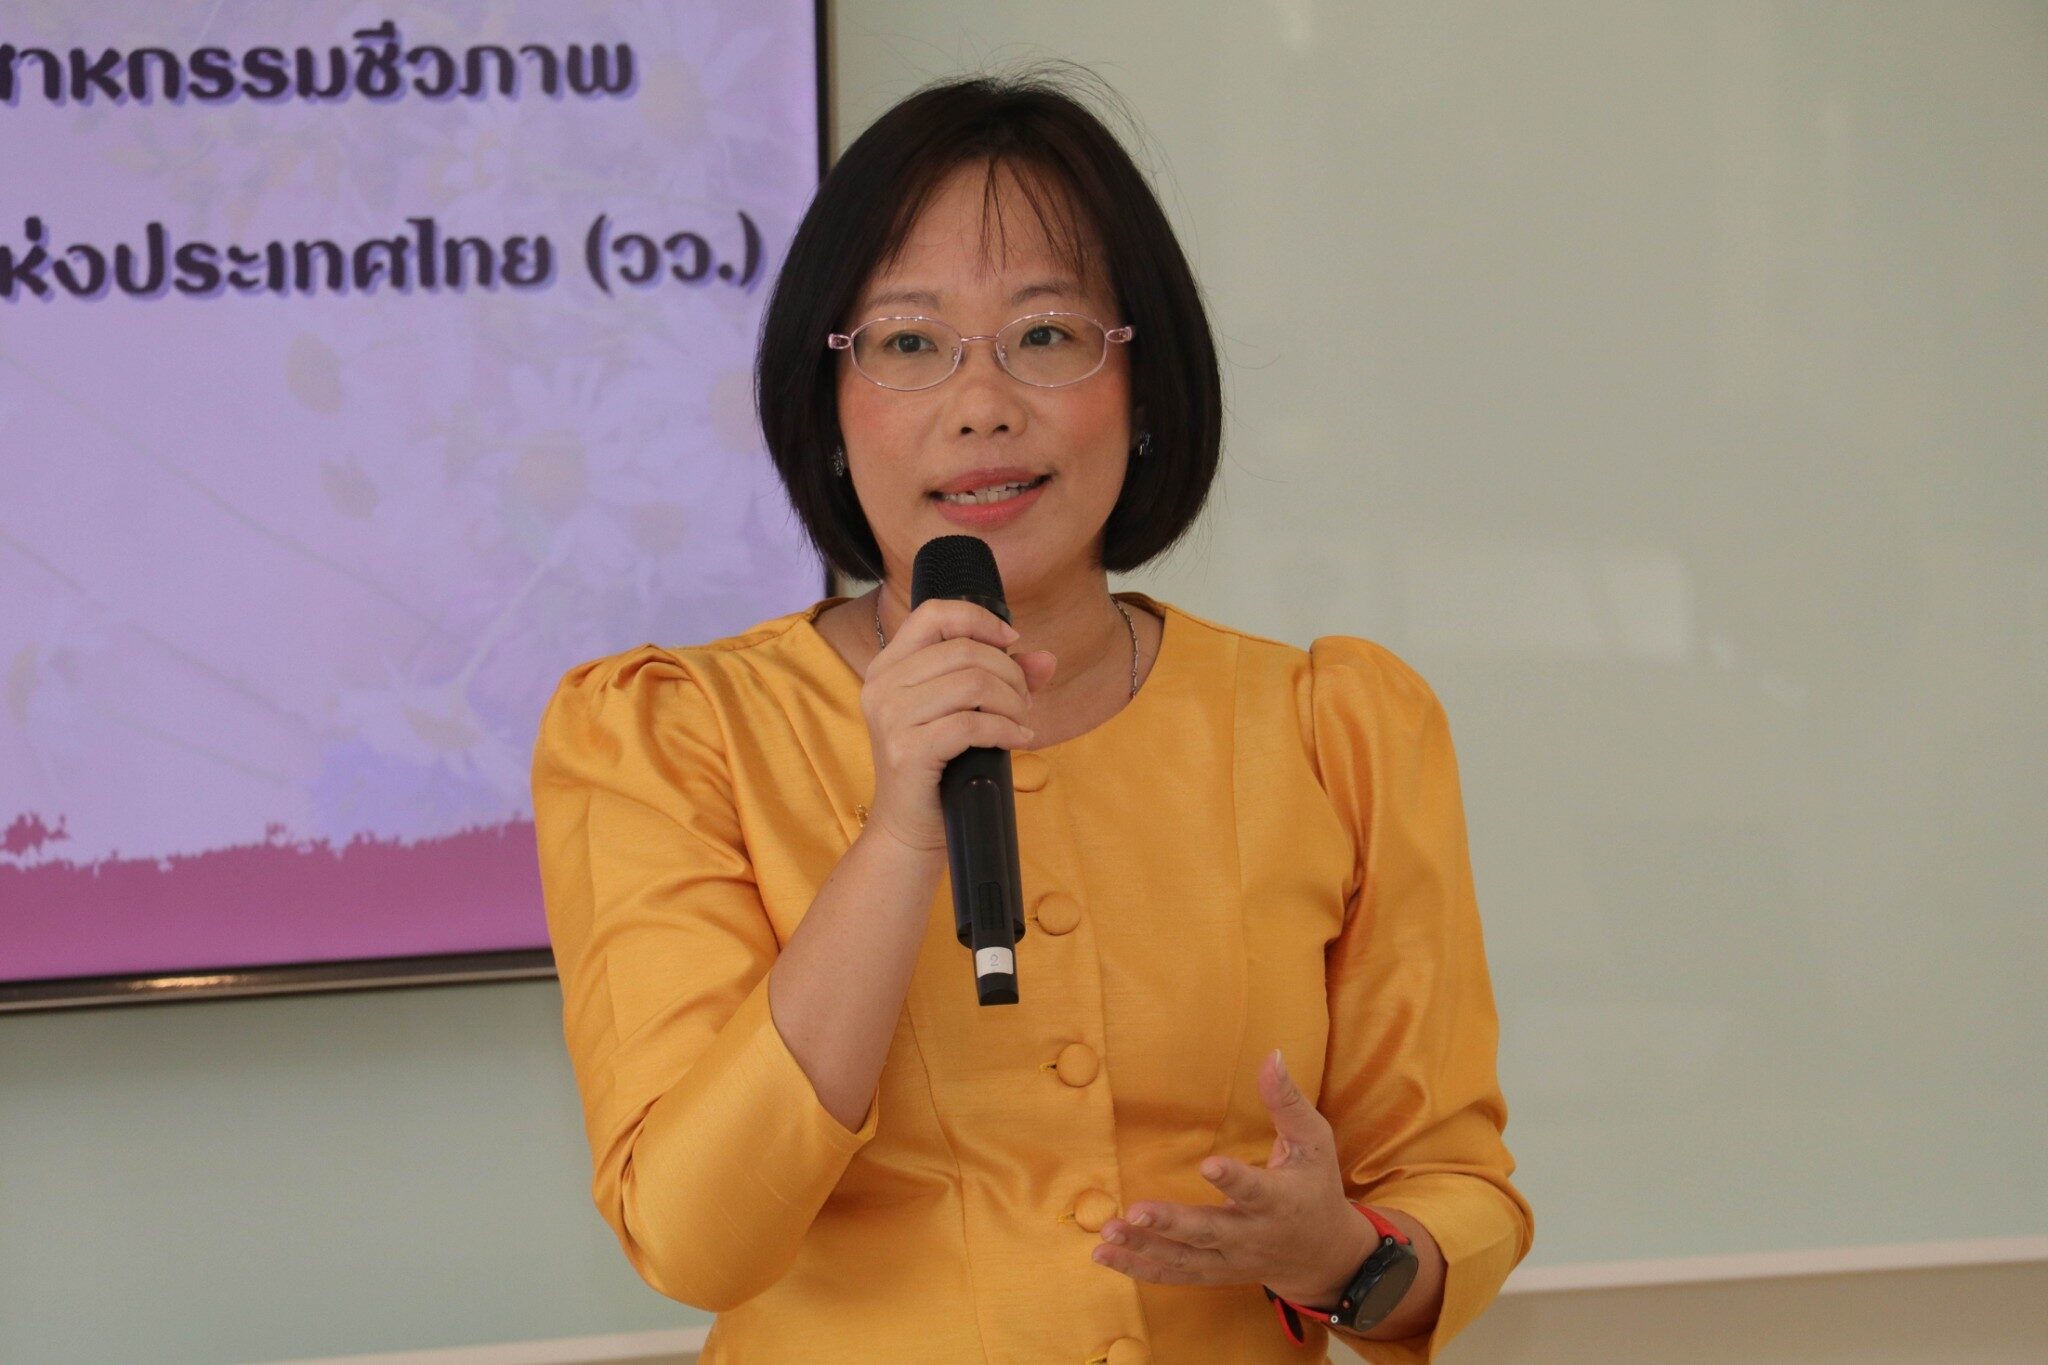 ดร.โศรดา วัลภา รองผู้ว่าการวิจัยและพัฒนาด้านอุตสาหกรรมชีวภาพ สถาบันวิจัยวิทยาศาสตร์และเทคโนโลยีแห่งประเทศไทย (วว.)